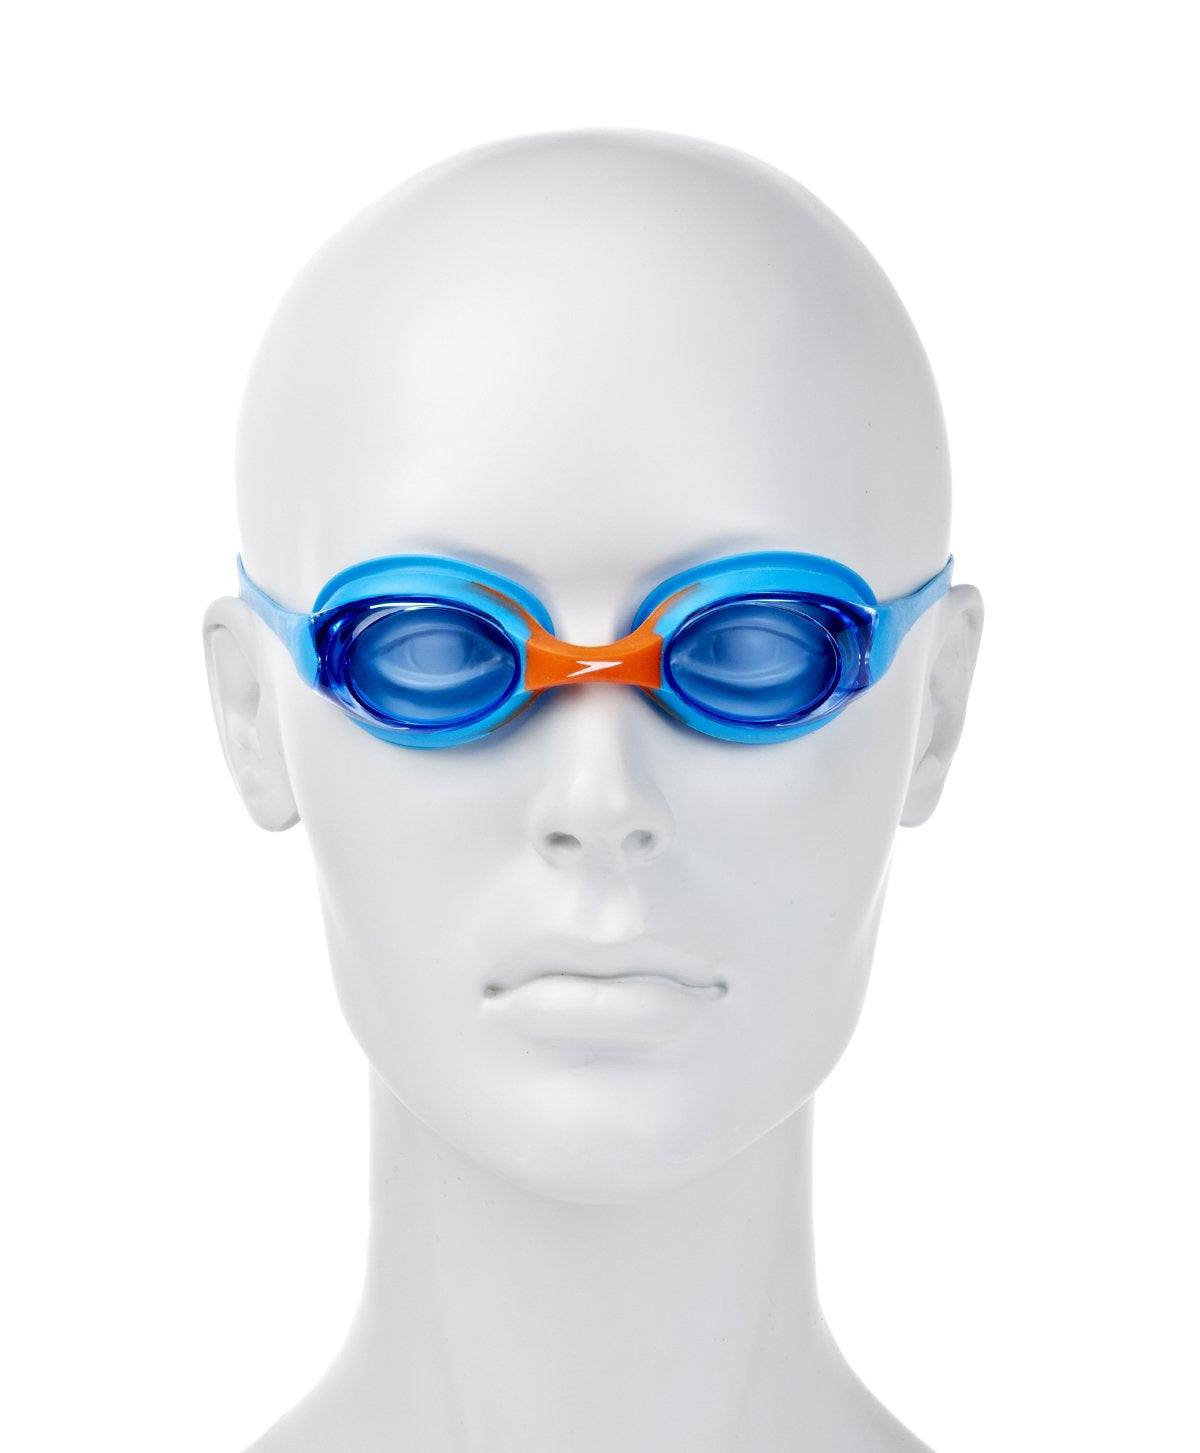 Speedo Tots School Flexifit Goggles - Best Price online Prokicksports.com